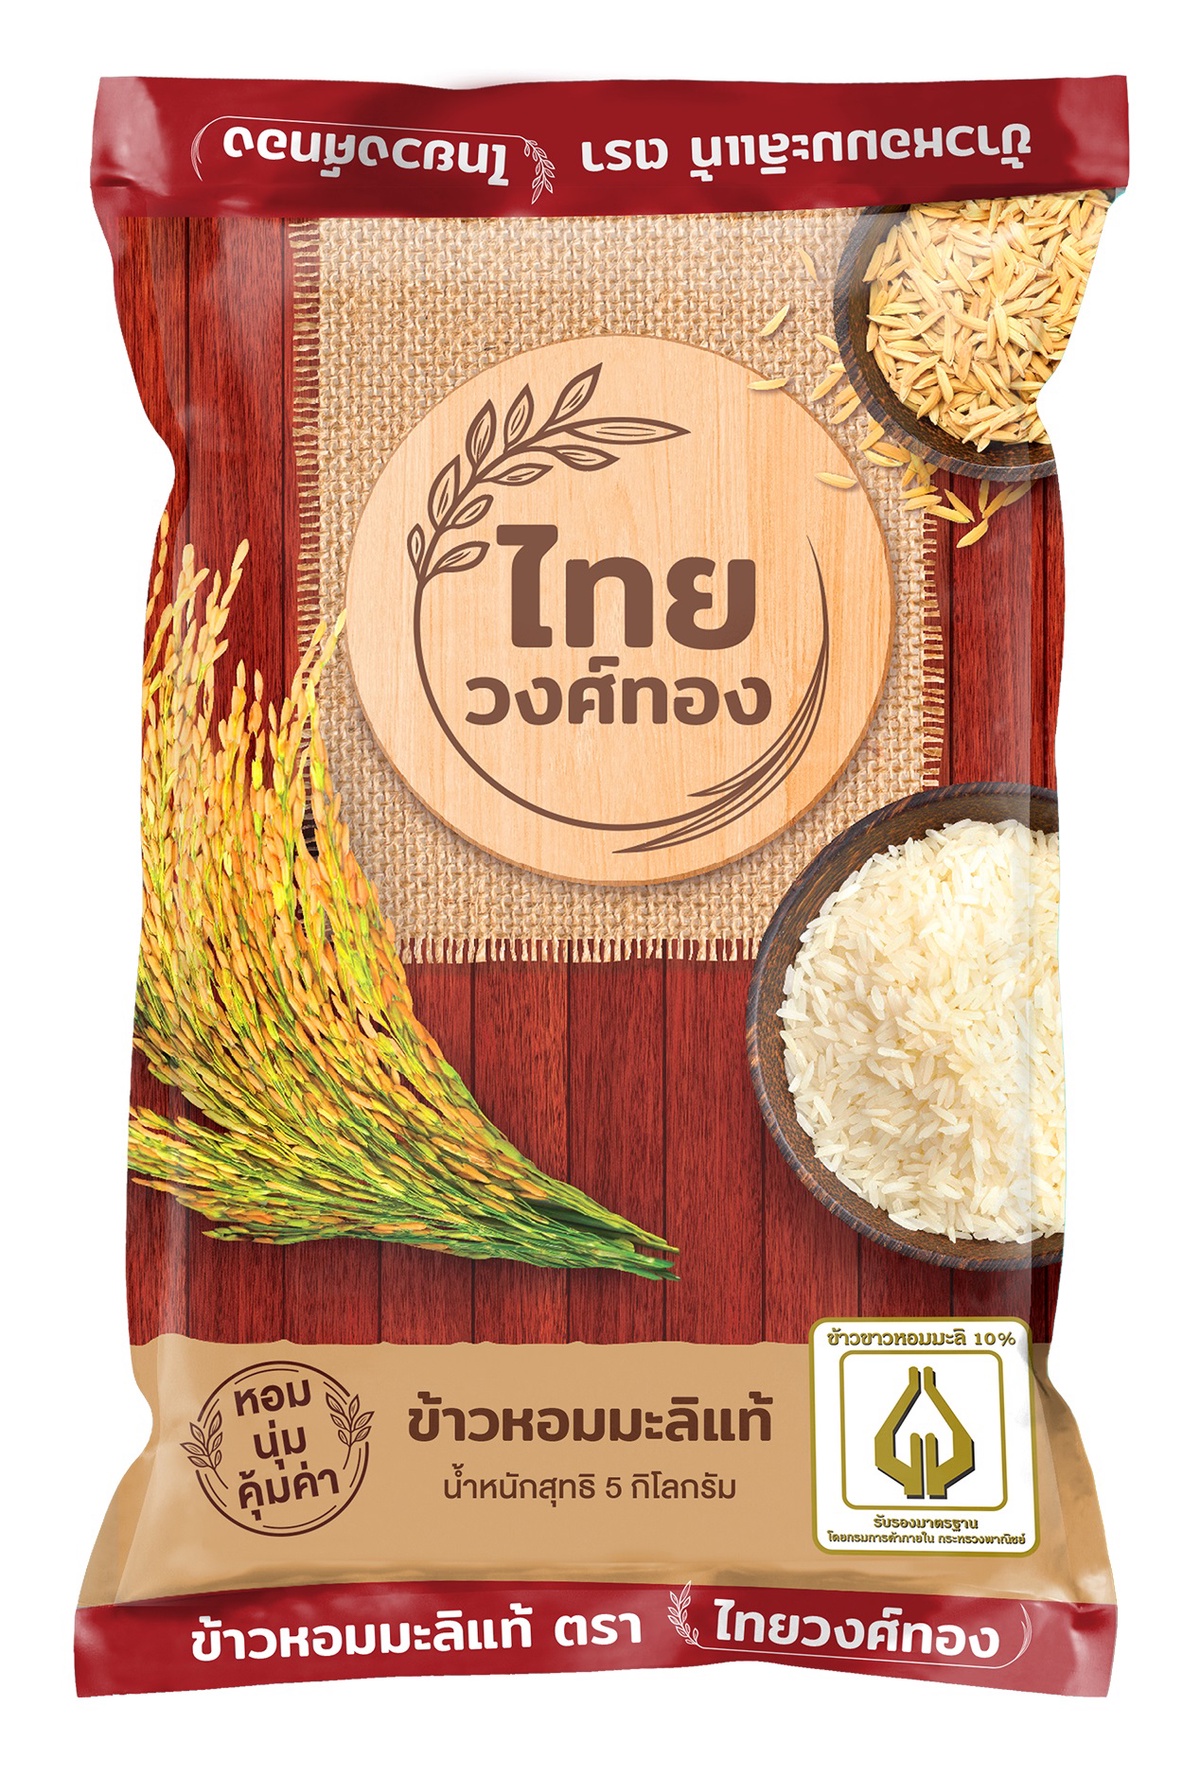 Big C ร่วมกับข้าวตราฉัตร จัดโปรโมชั่นสินค้าราคาดีเพื่อคนไทย ภายในงาน Big C Rice Fair ข้าวถุงร่วมใจ ประหยัดทั่วไทย ที่บิ๊กซี ครั้งที่